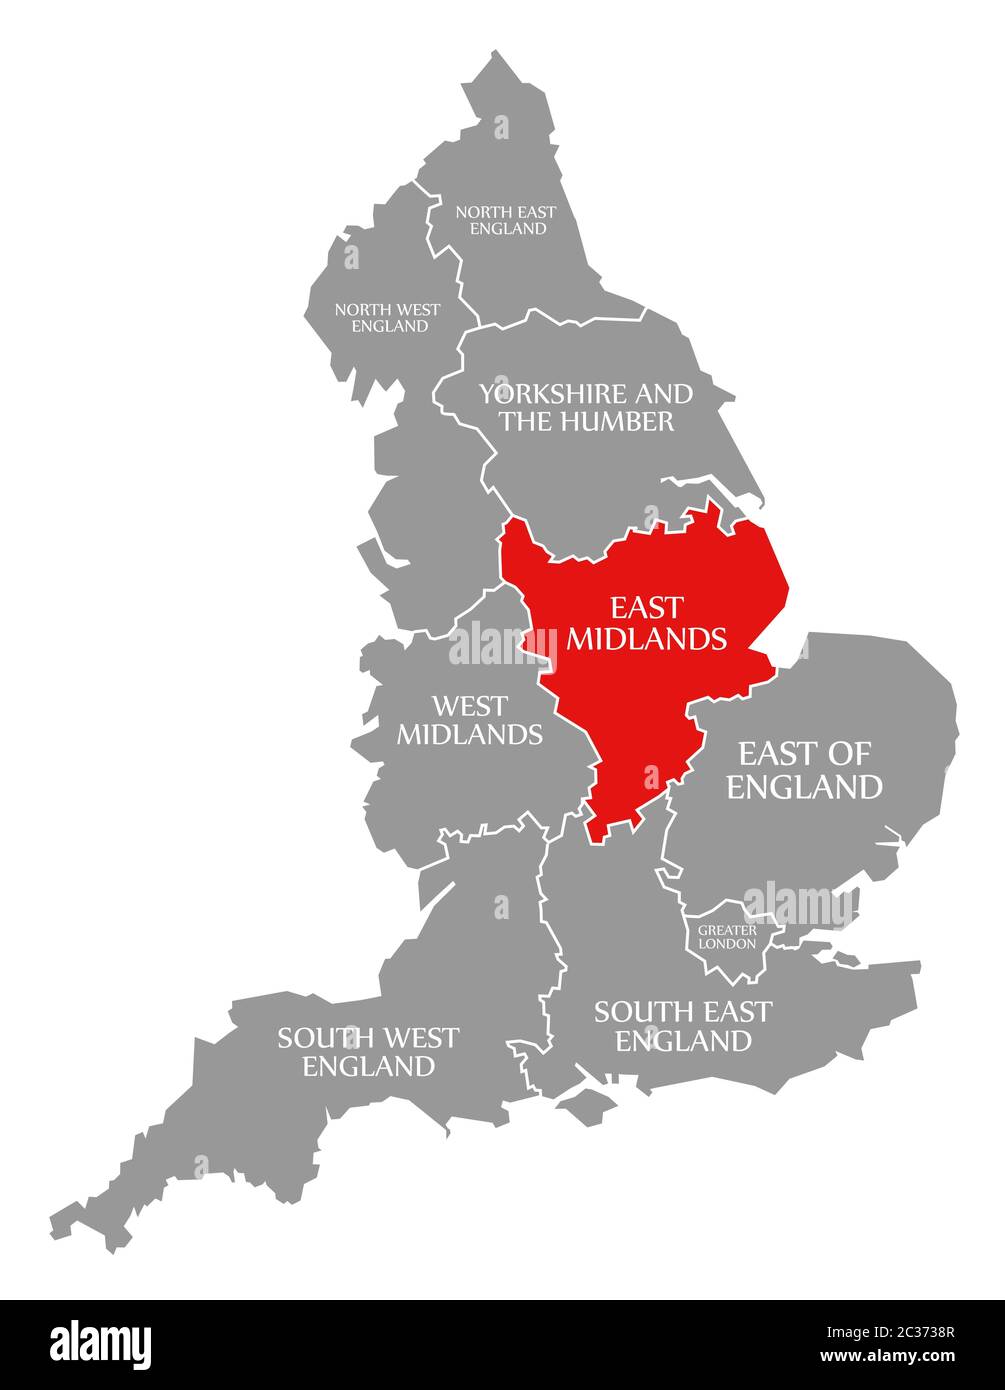 East Midlands resaltada en rojo en el mapa de Inglaterra Foto de stock